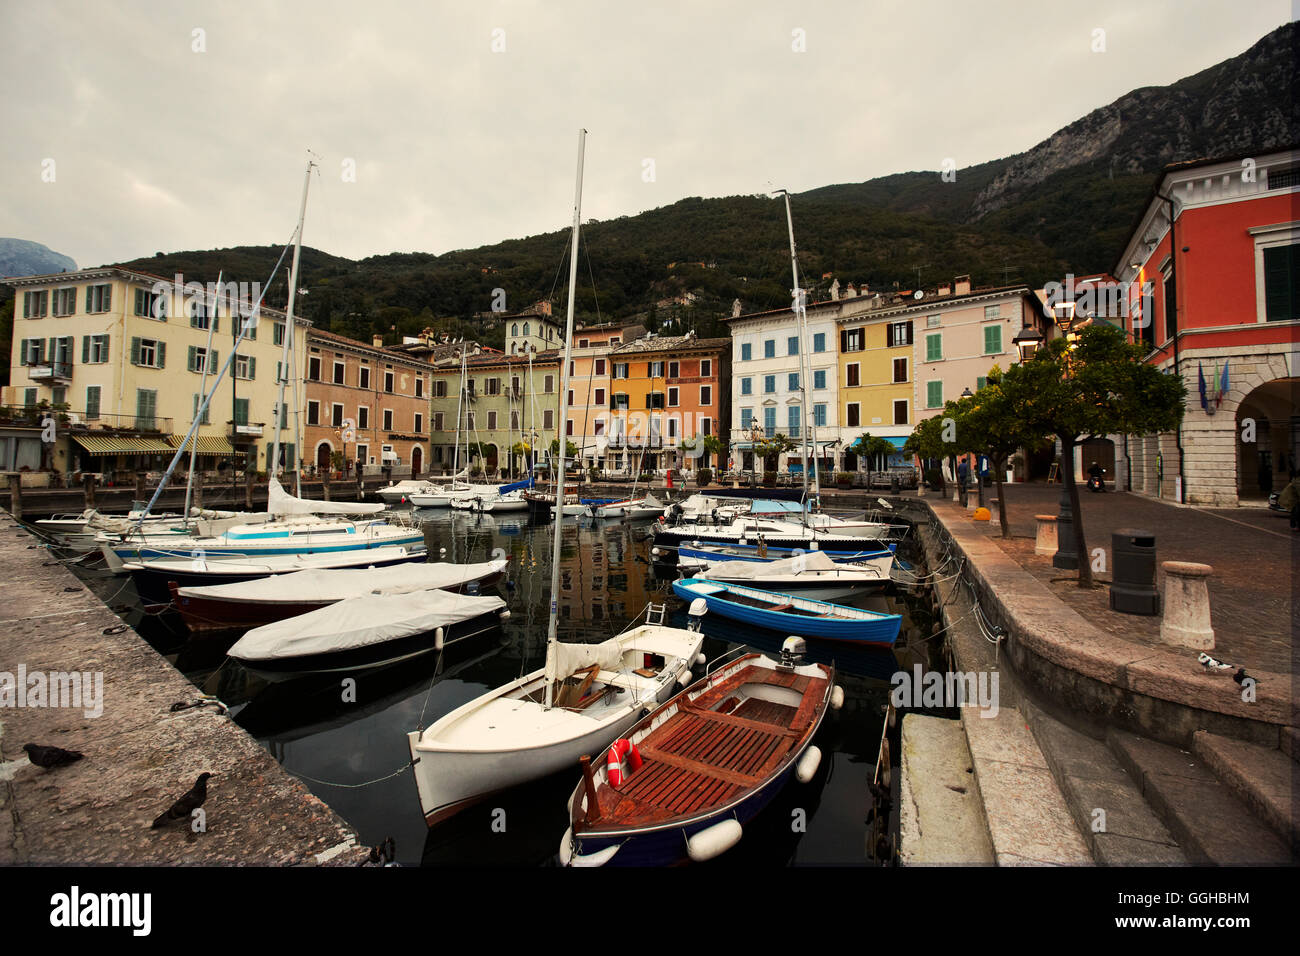 Boats in marina, Gargnano, Lake Garda, Lombardy, Italy Stock Photo